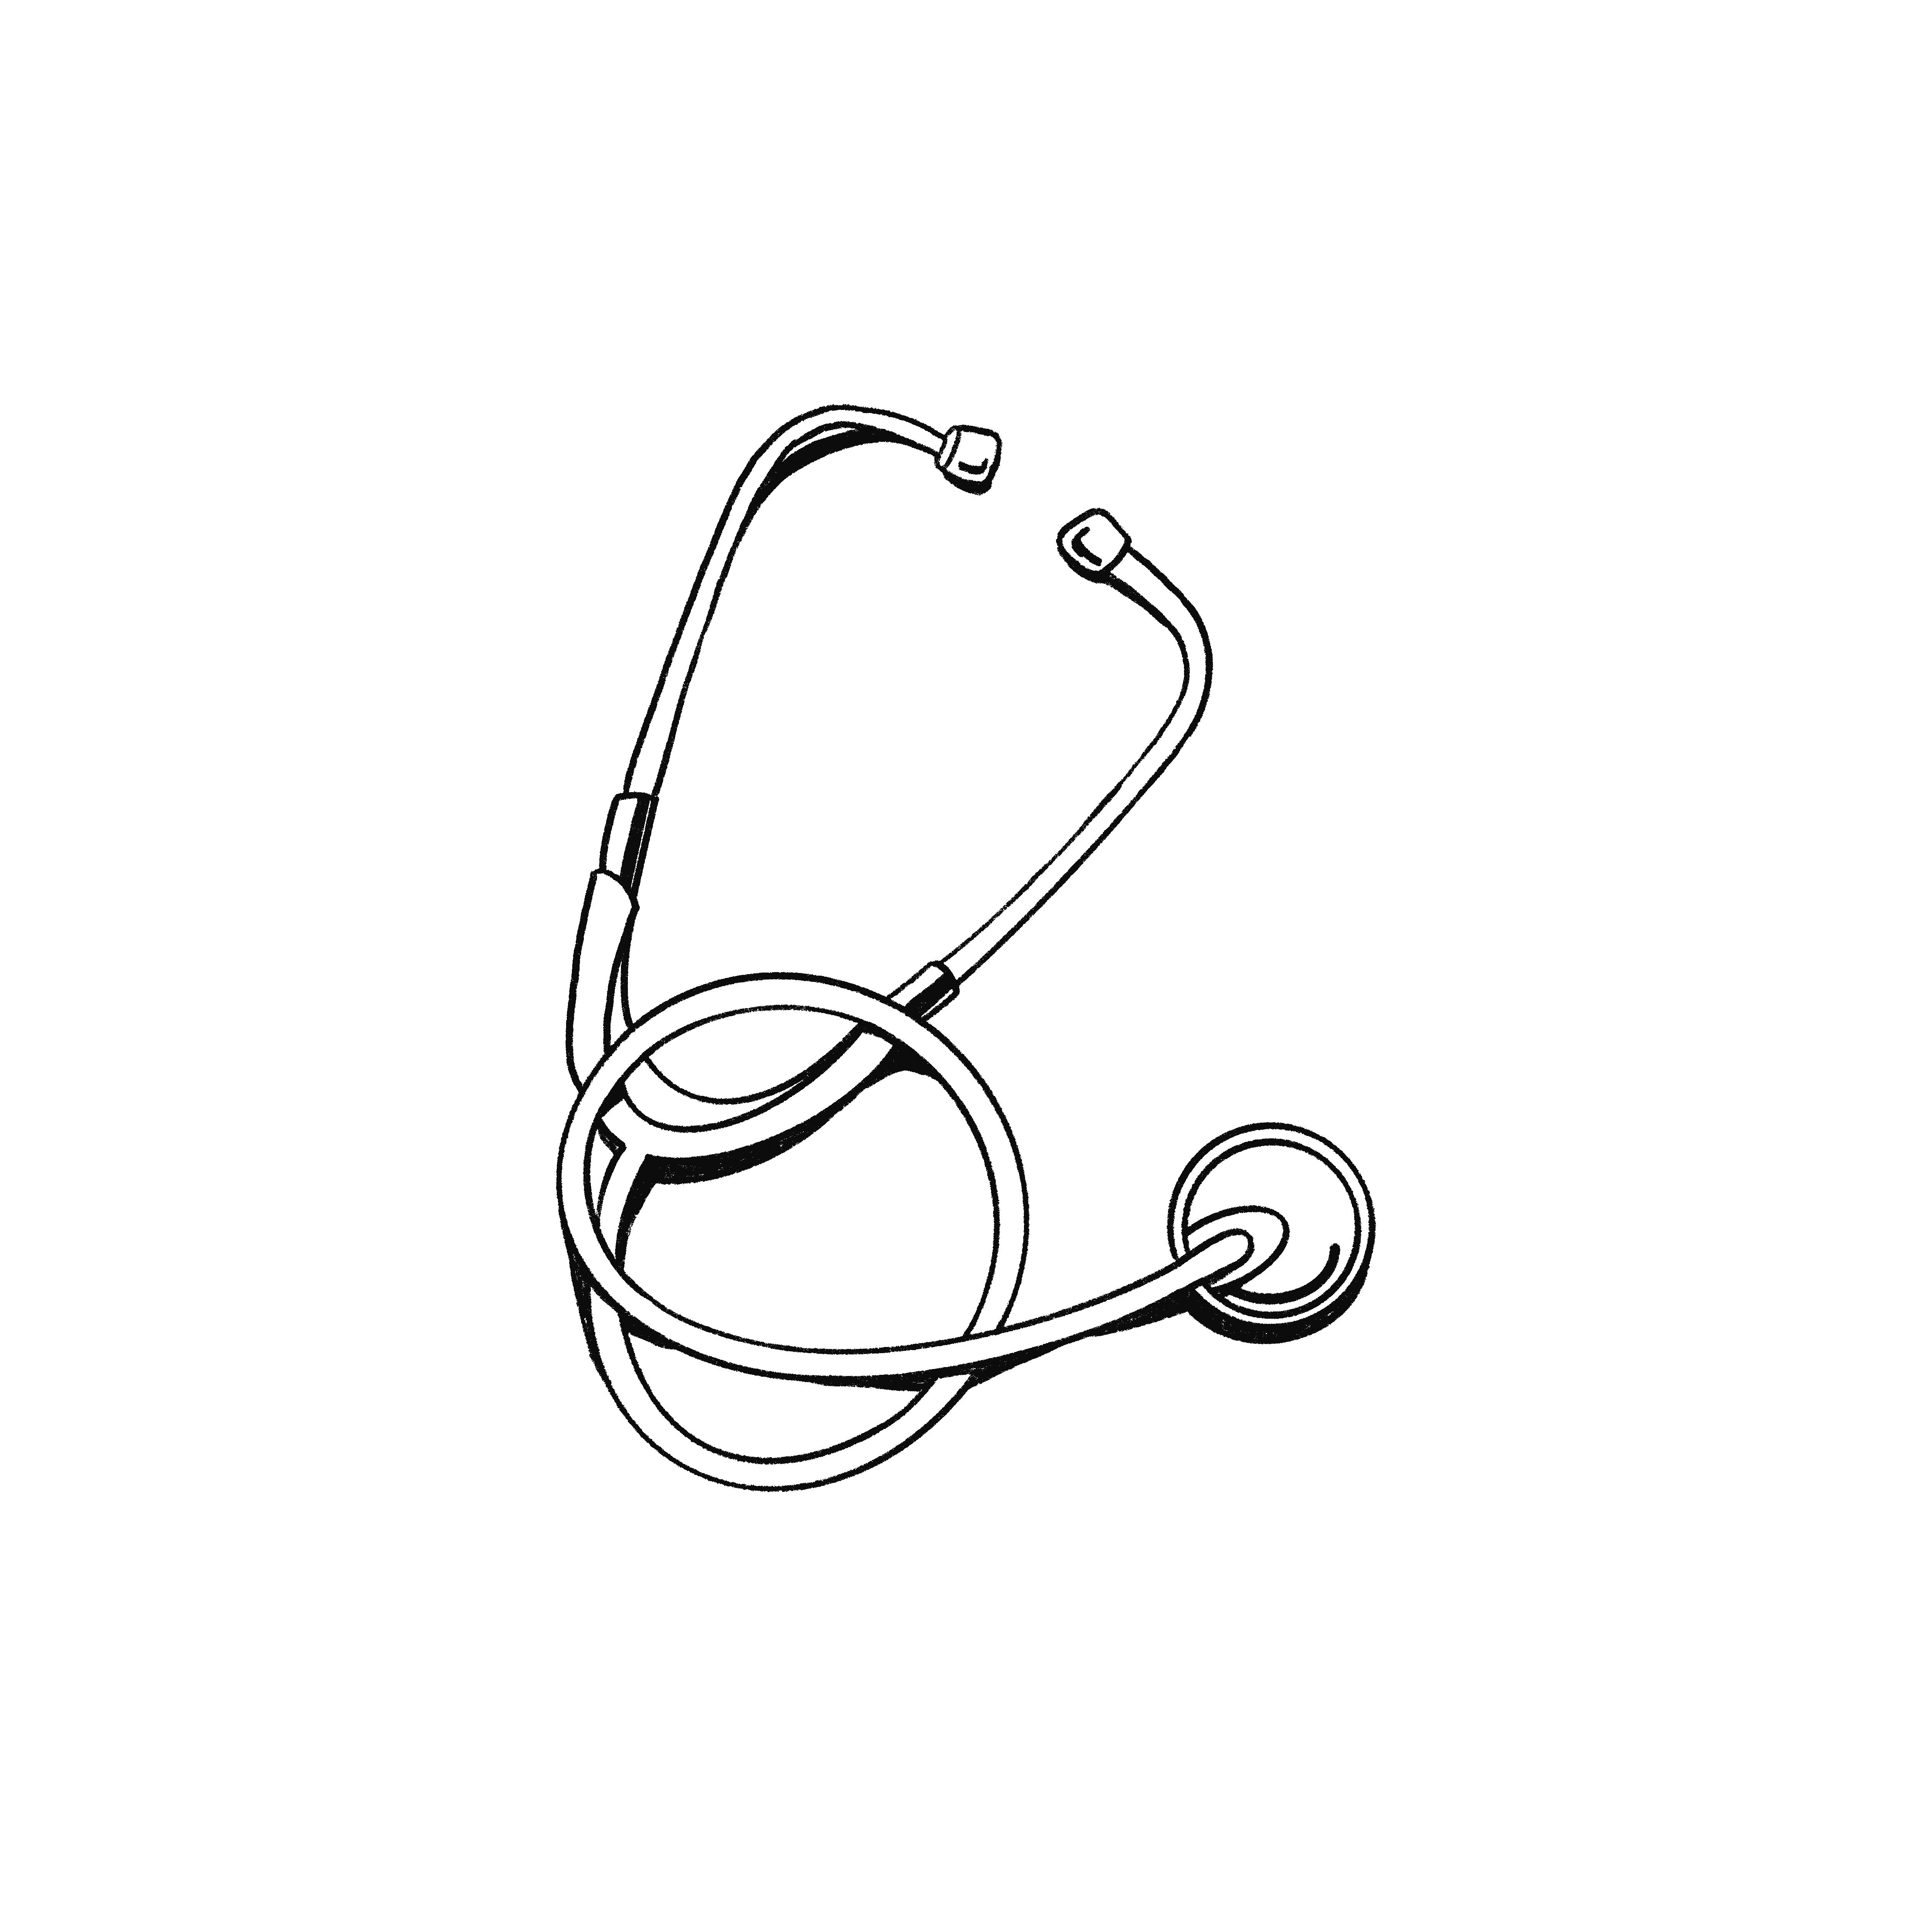 Illustration eines Stethoskops